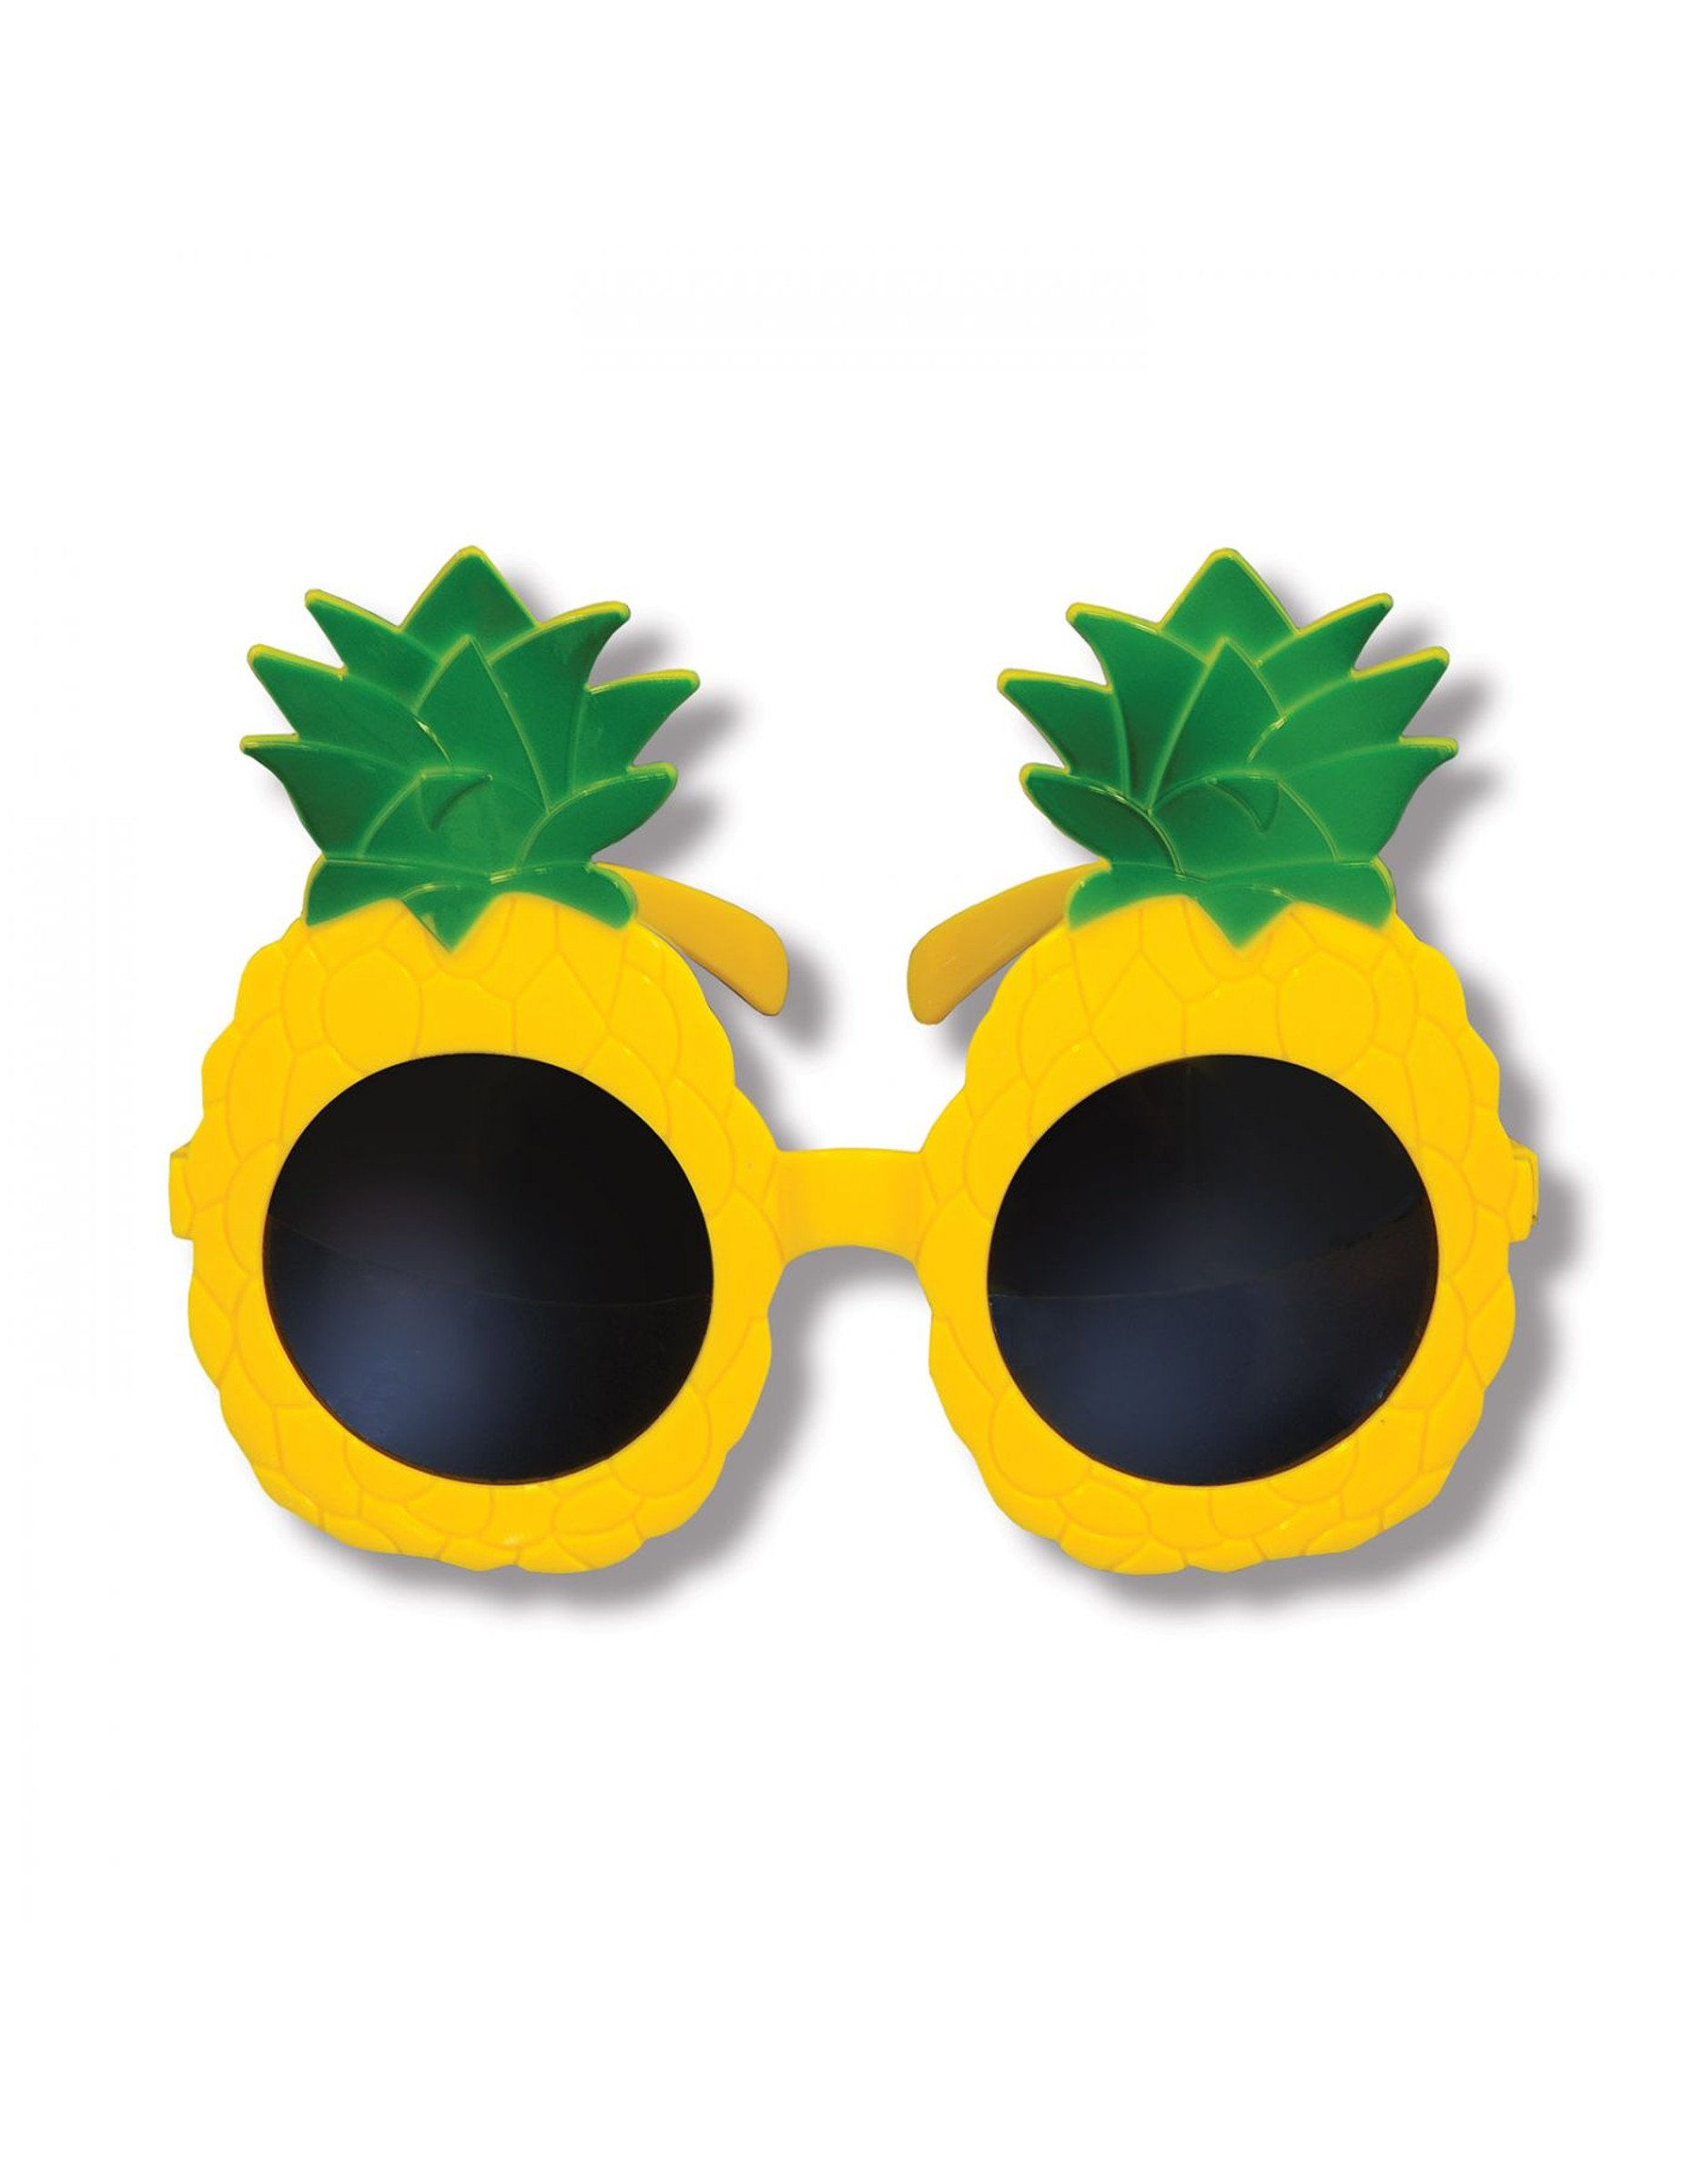 Originelle Ananas-Brille Scherzbrille für den Sommer gelb-grün von 360 DEGREES